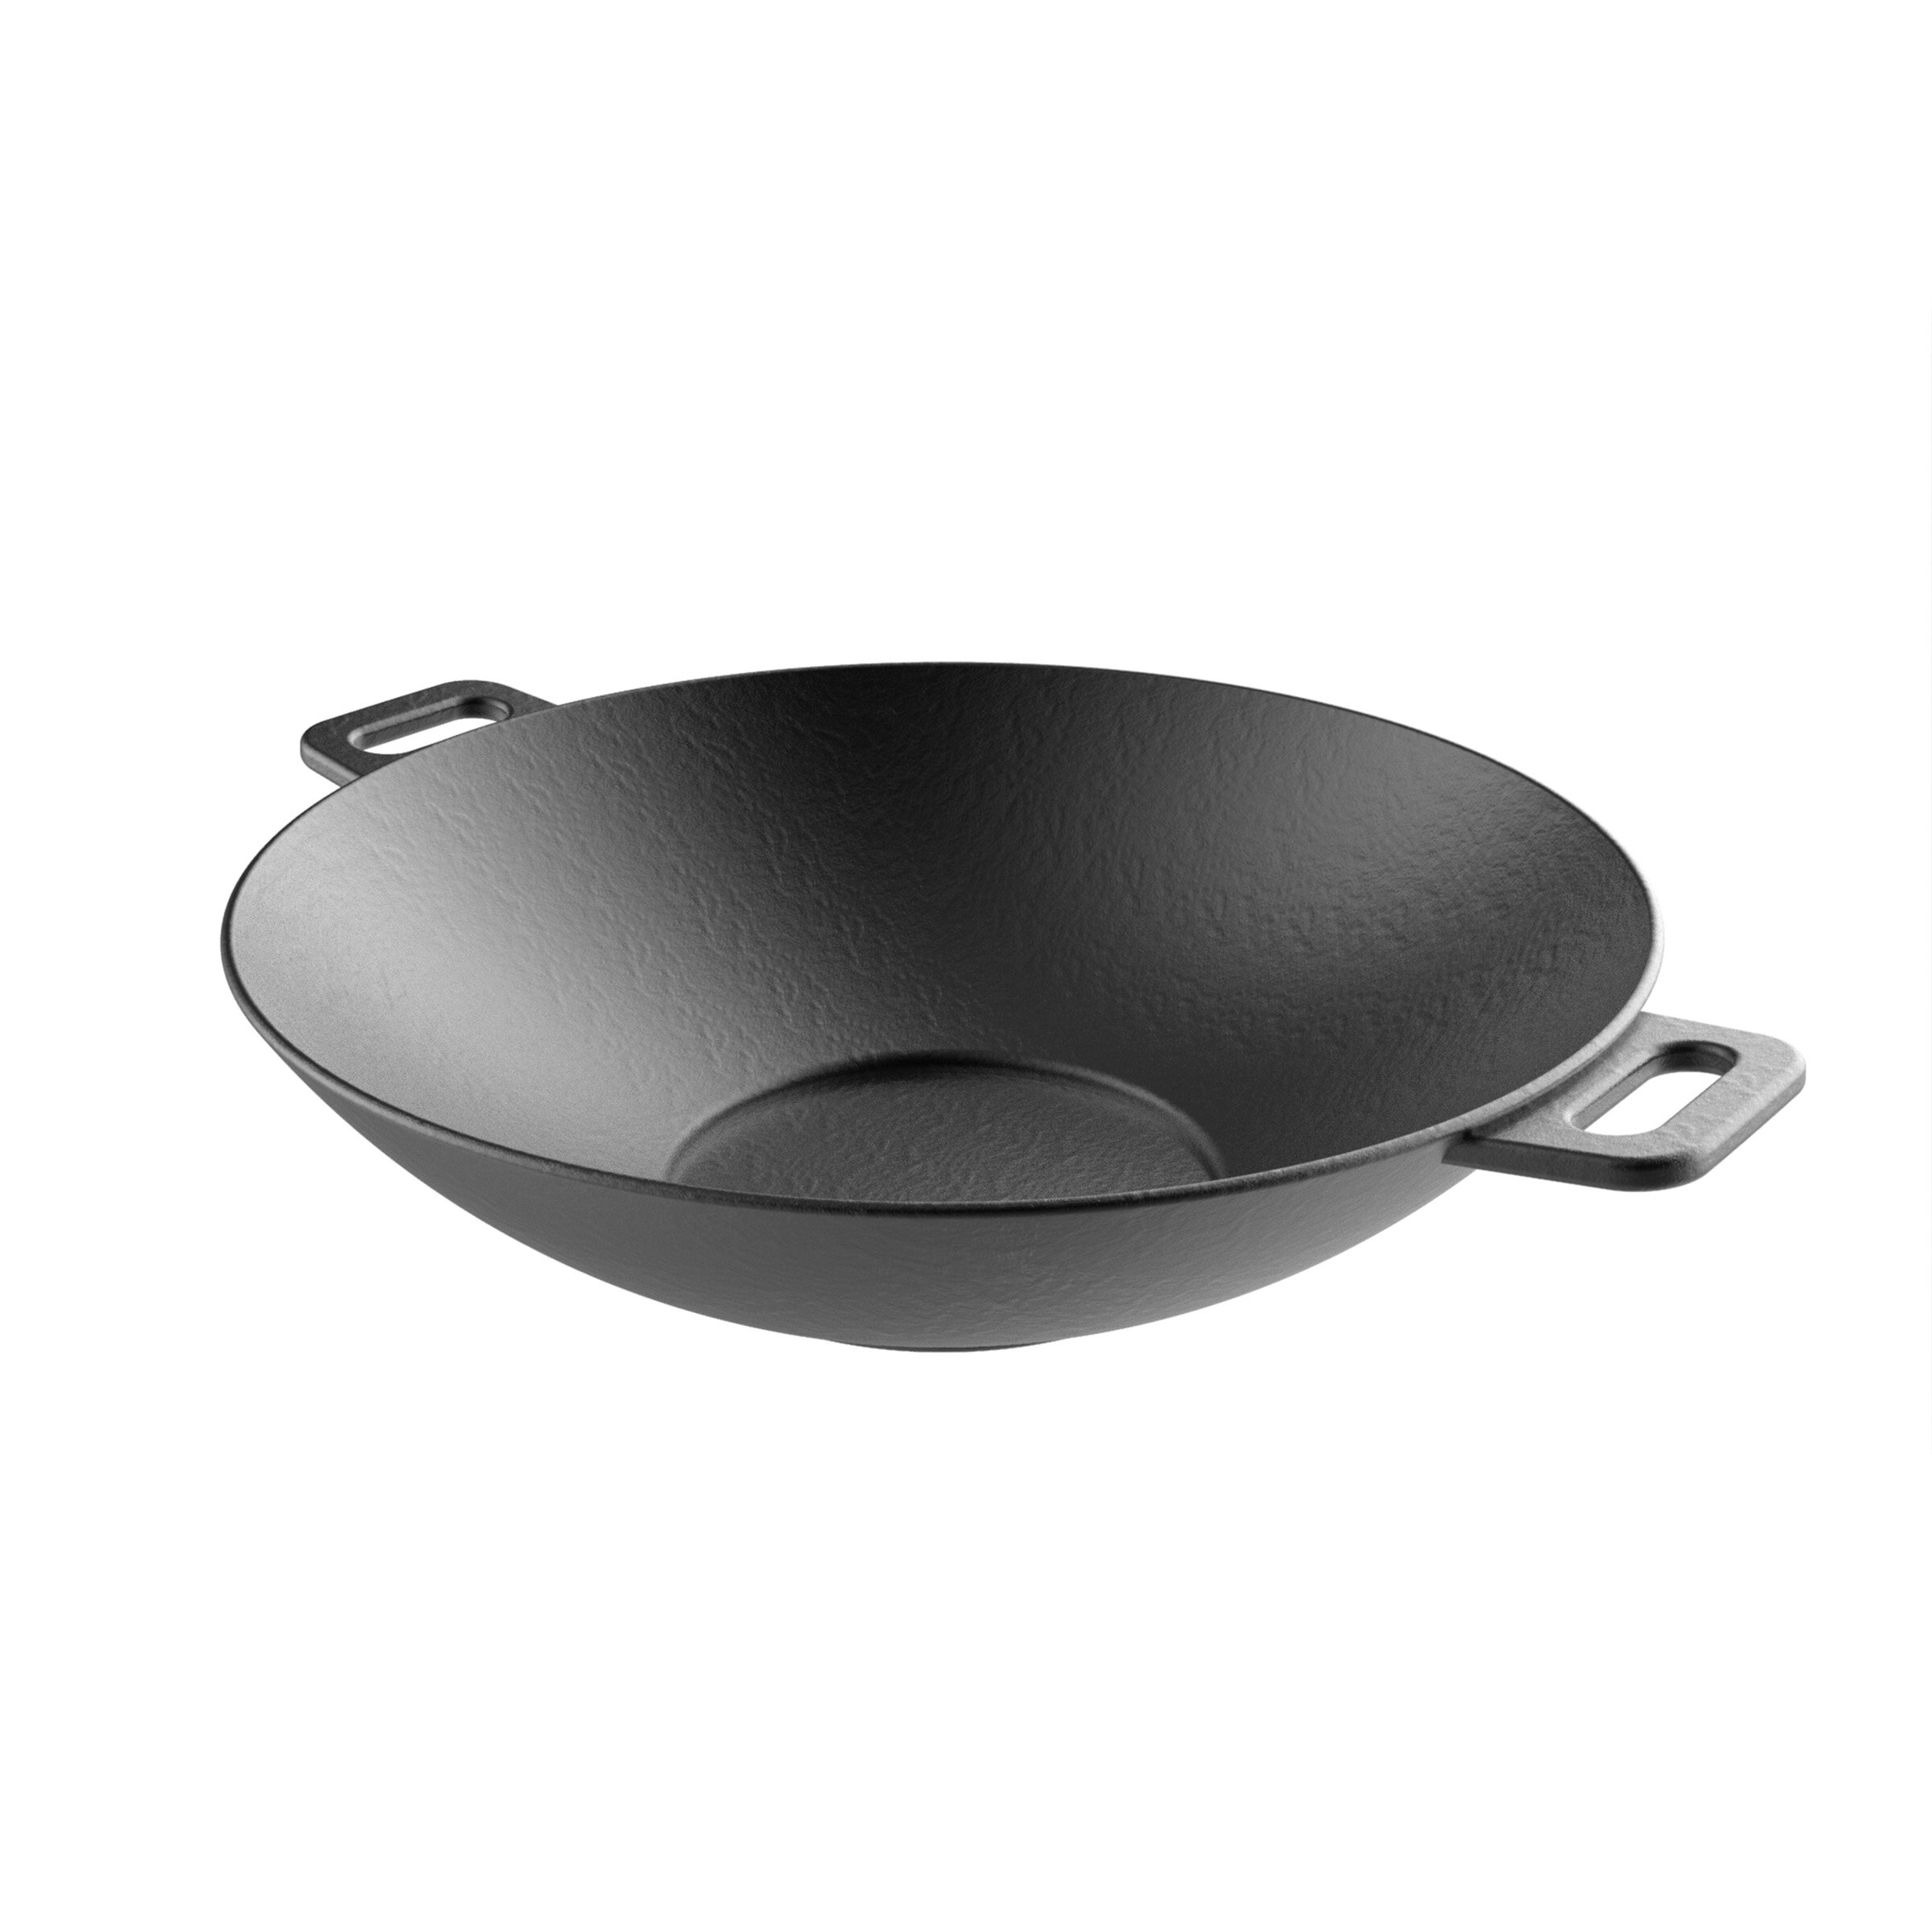 https://assets.wfcdn.com/im/50304527/compr-r85/6039/60390654/classic-cuisine-14-cast-iron-wok.jpg